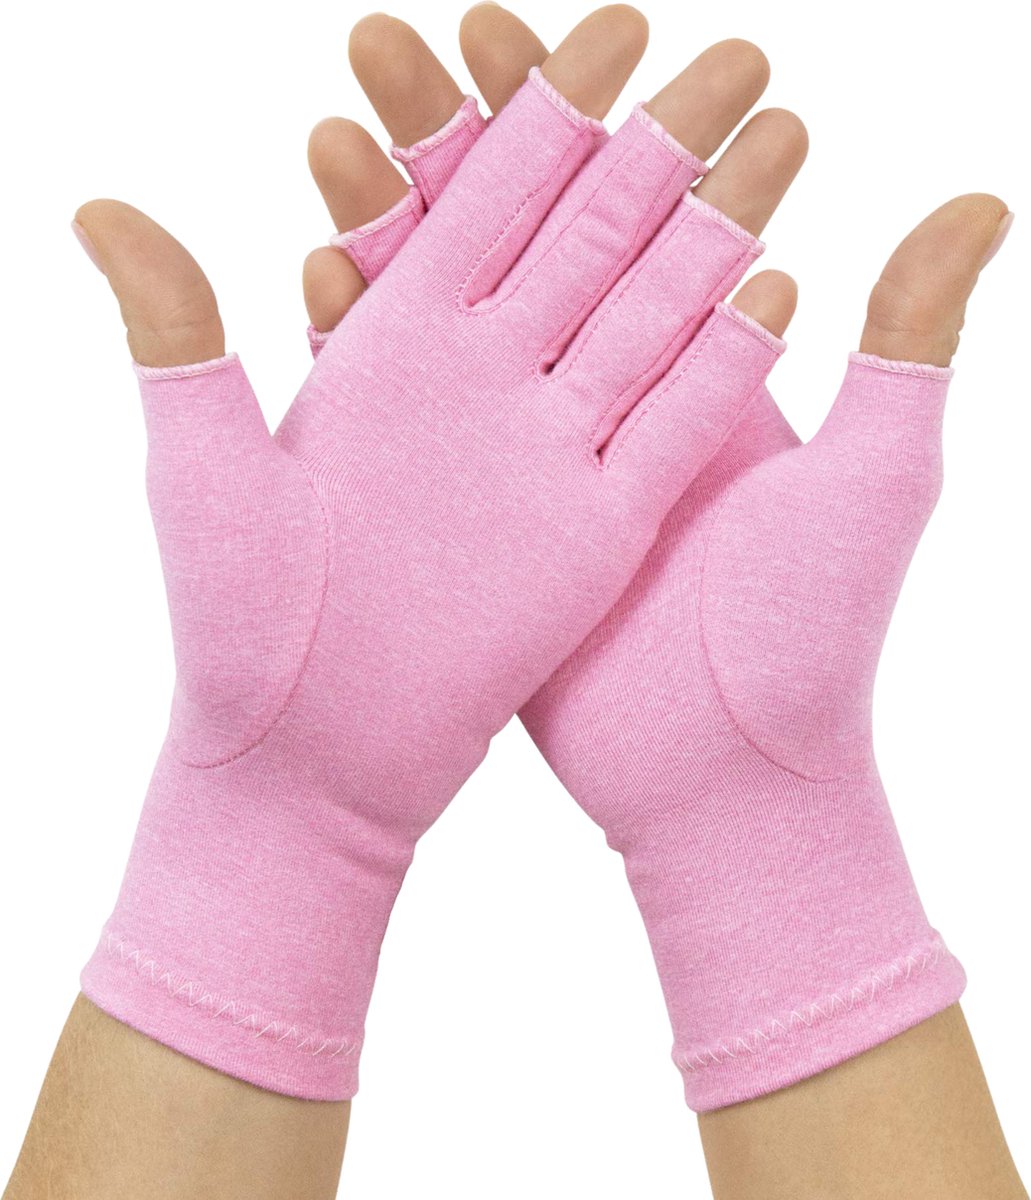 U Fit One 2 Stuks Roze Therapeutische Reuma Handschoenen - Artritis Compressie Handschoenen - Maat L